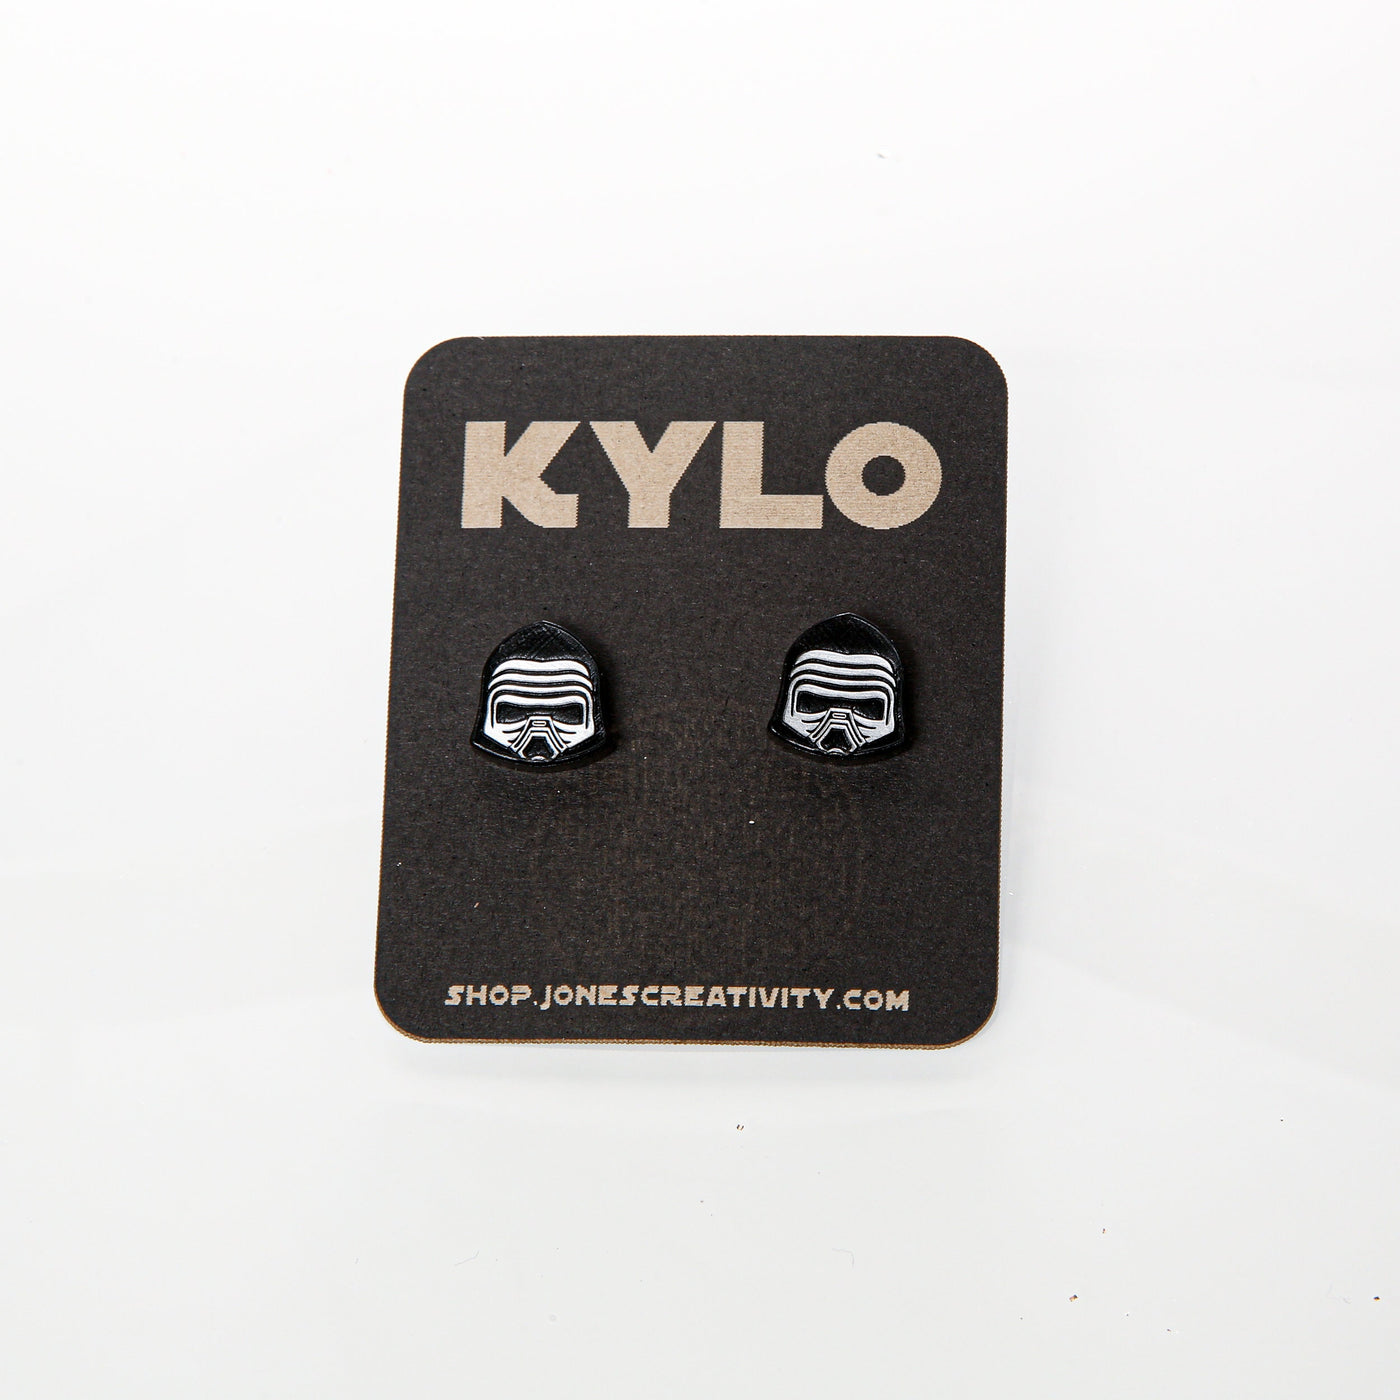 Kylo Ren  Stud Earrings - Star Wars Kylo Ren Earrings